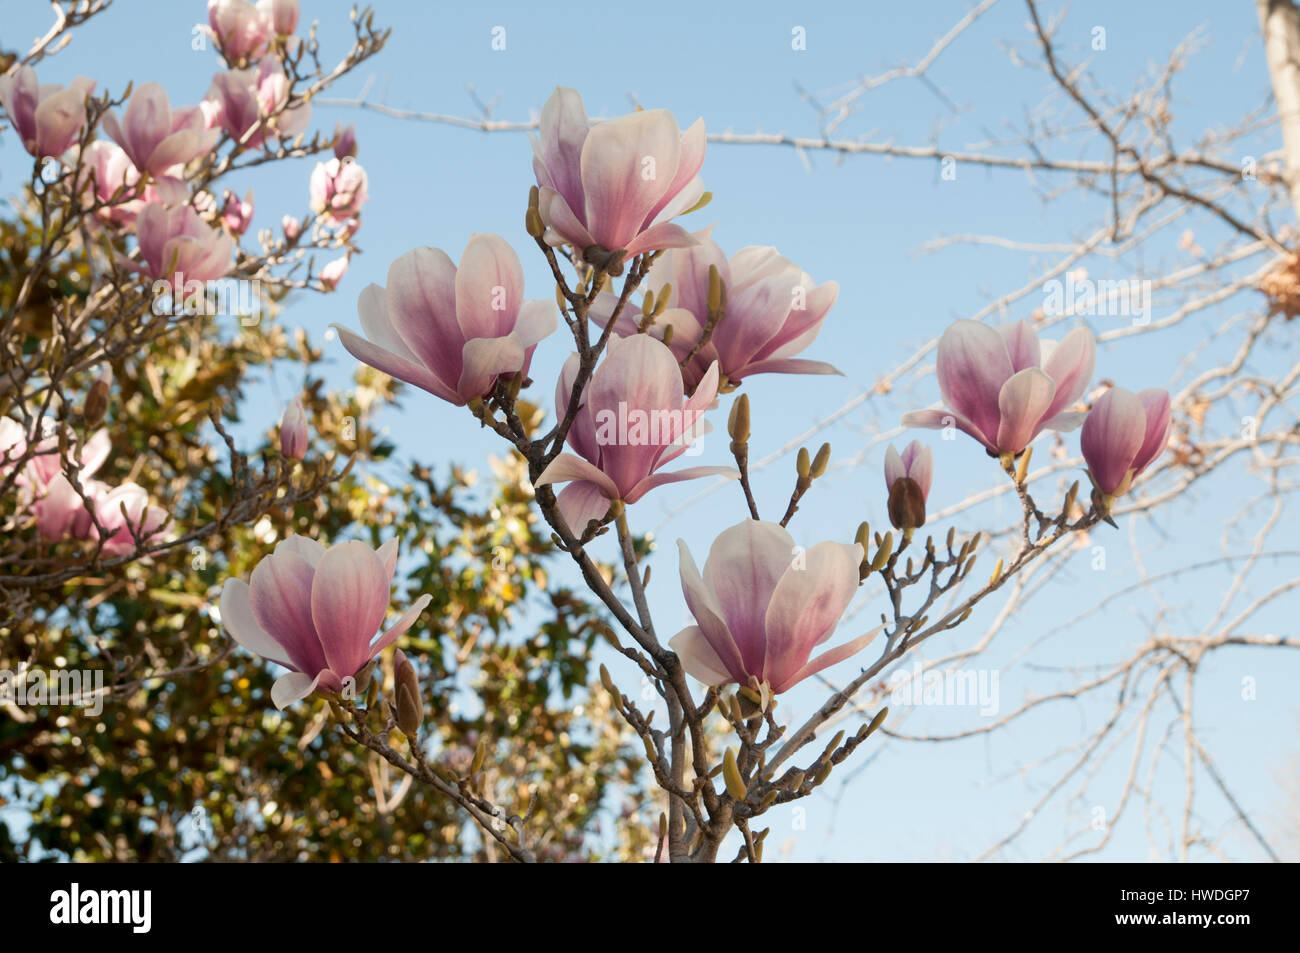 Magnolia (Magnolia x loebneri 'Merrill') flowers. Photographed at Parque del Buen Retiro, Madrid, Spain Stock Photo